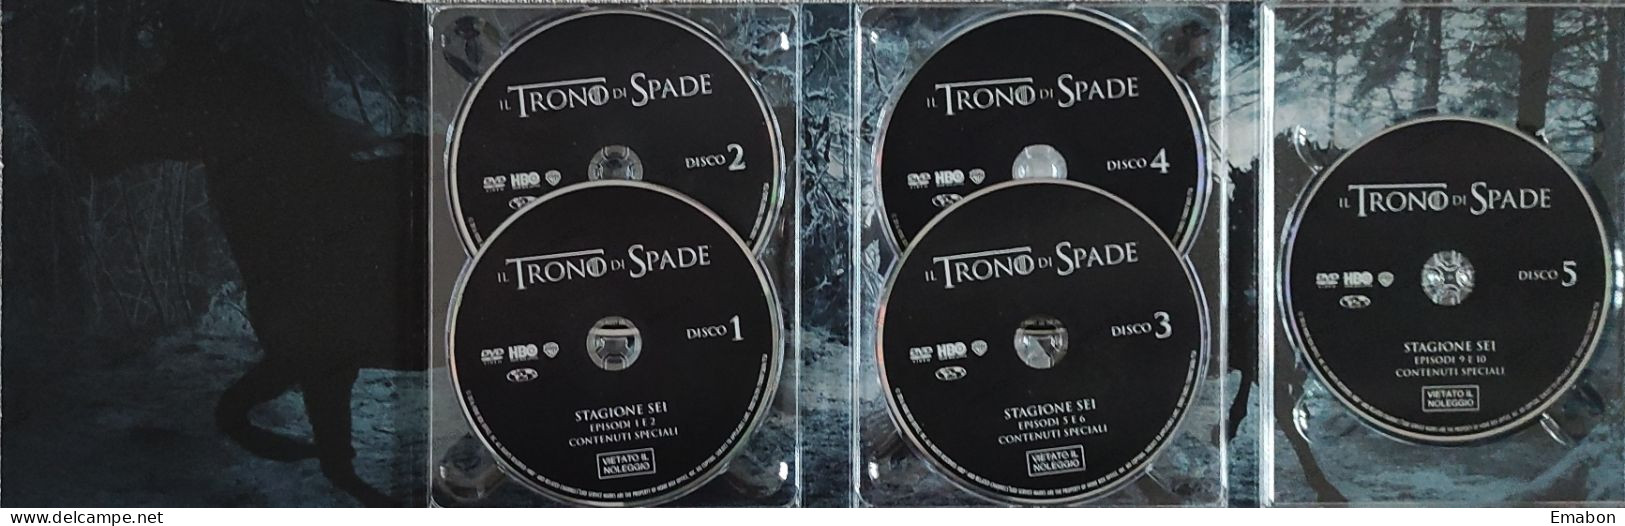 BORGATTA - FANTASTICO - BOX 5 Dvd " IL TRONO DI SPADE SESTA STAGIONE "-  - HBO 2015 -  USATO In Buono Stato - Mystery